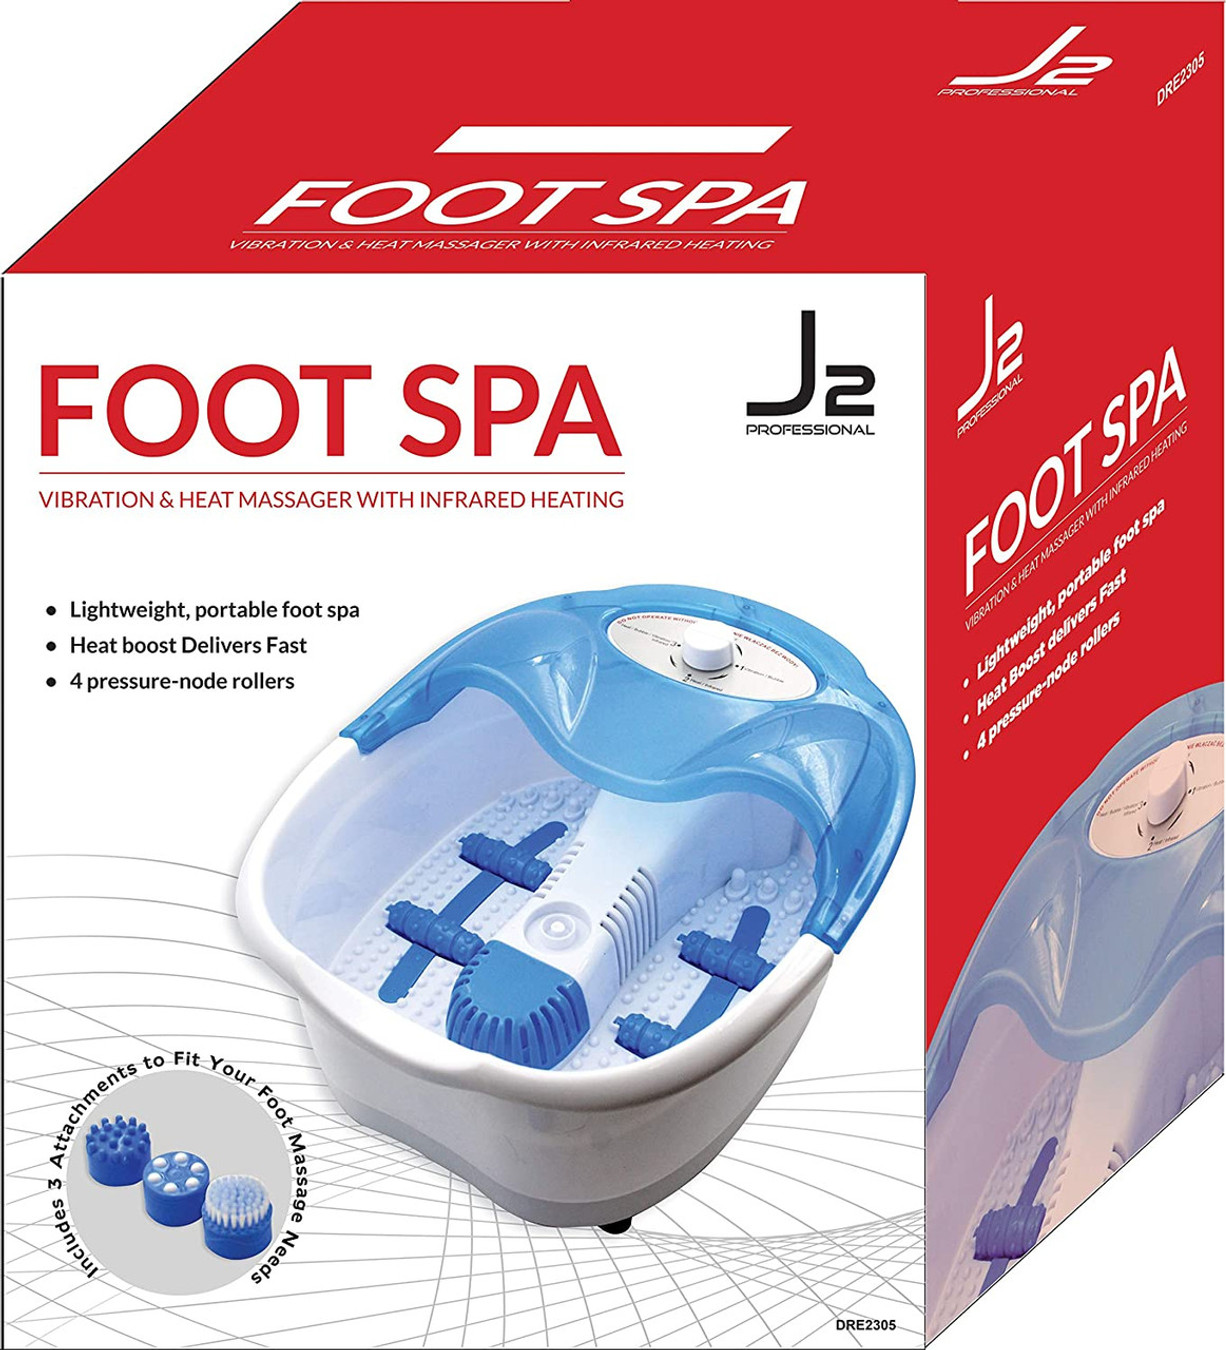 J2 Professional Foot Spa